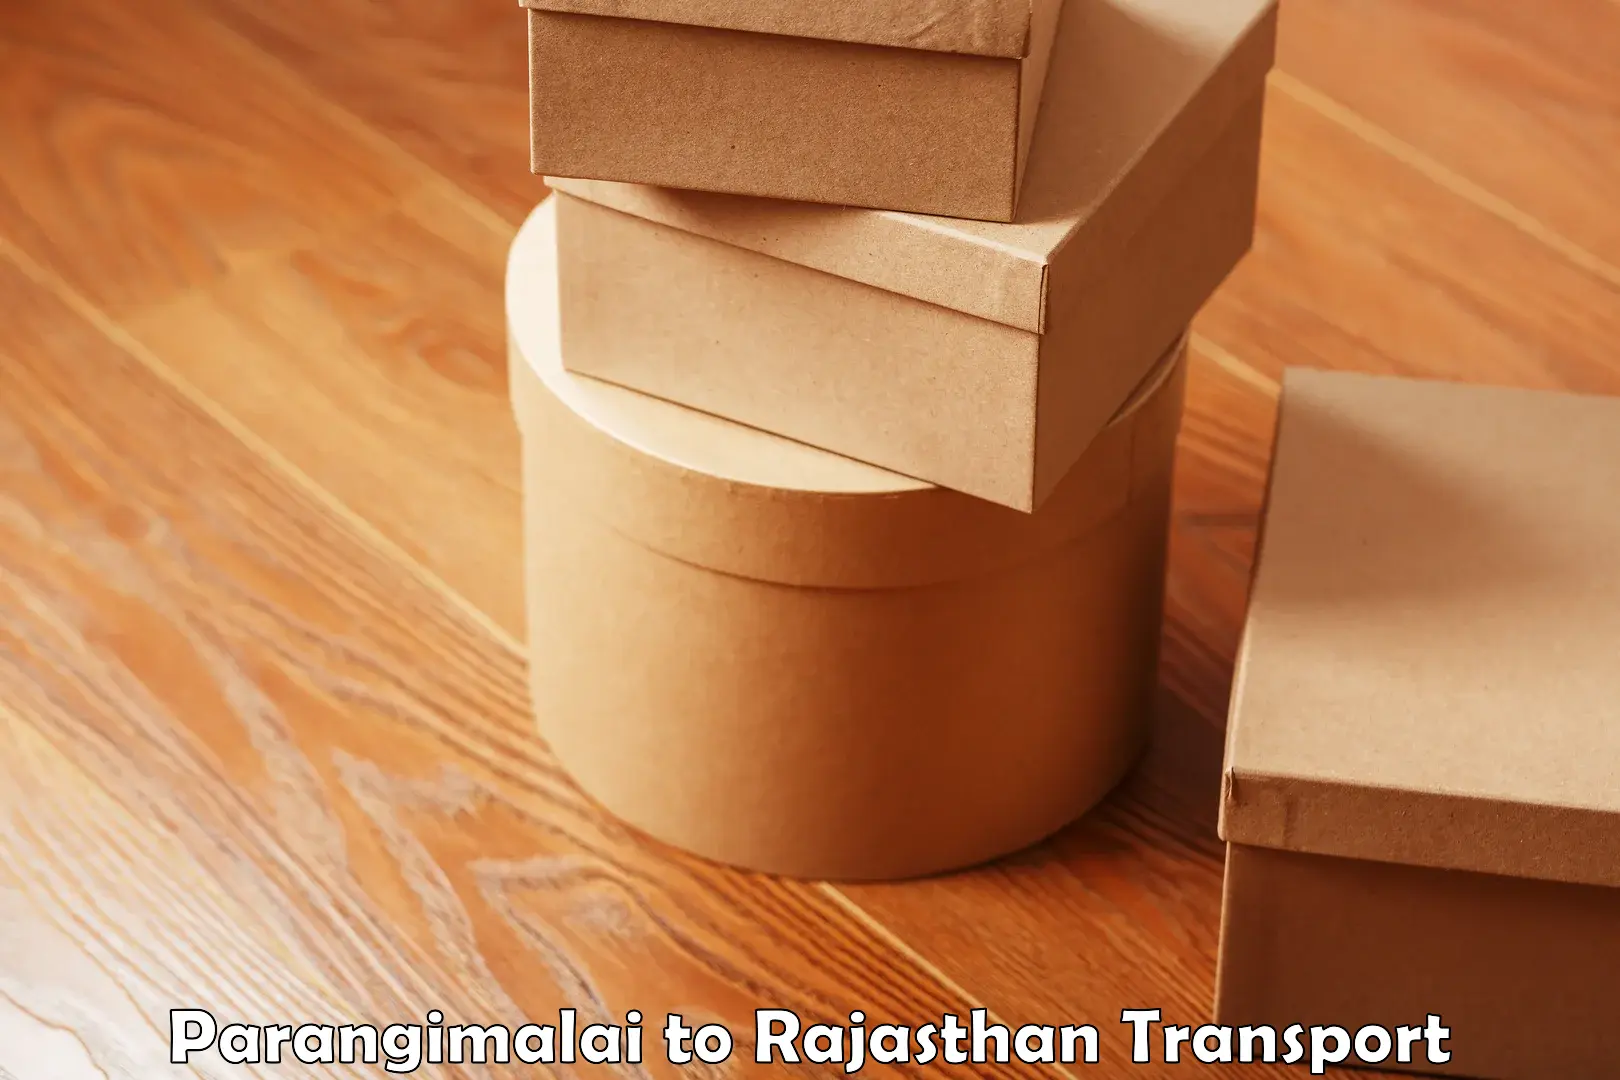 Land transport services Parangimalai to Rajasthan